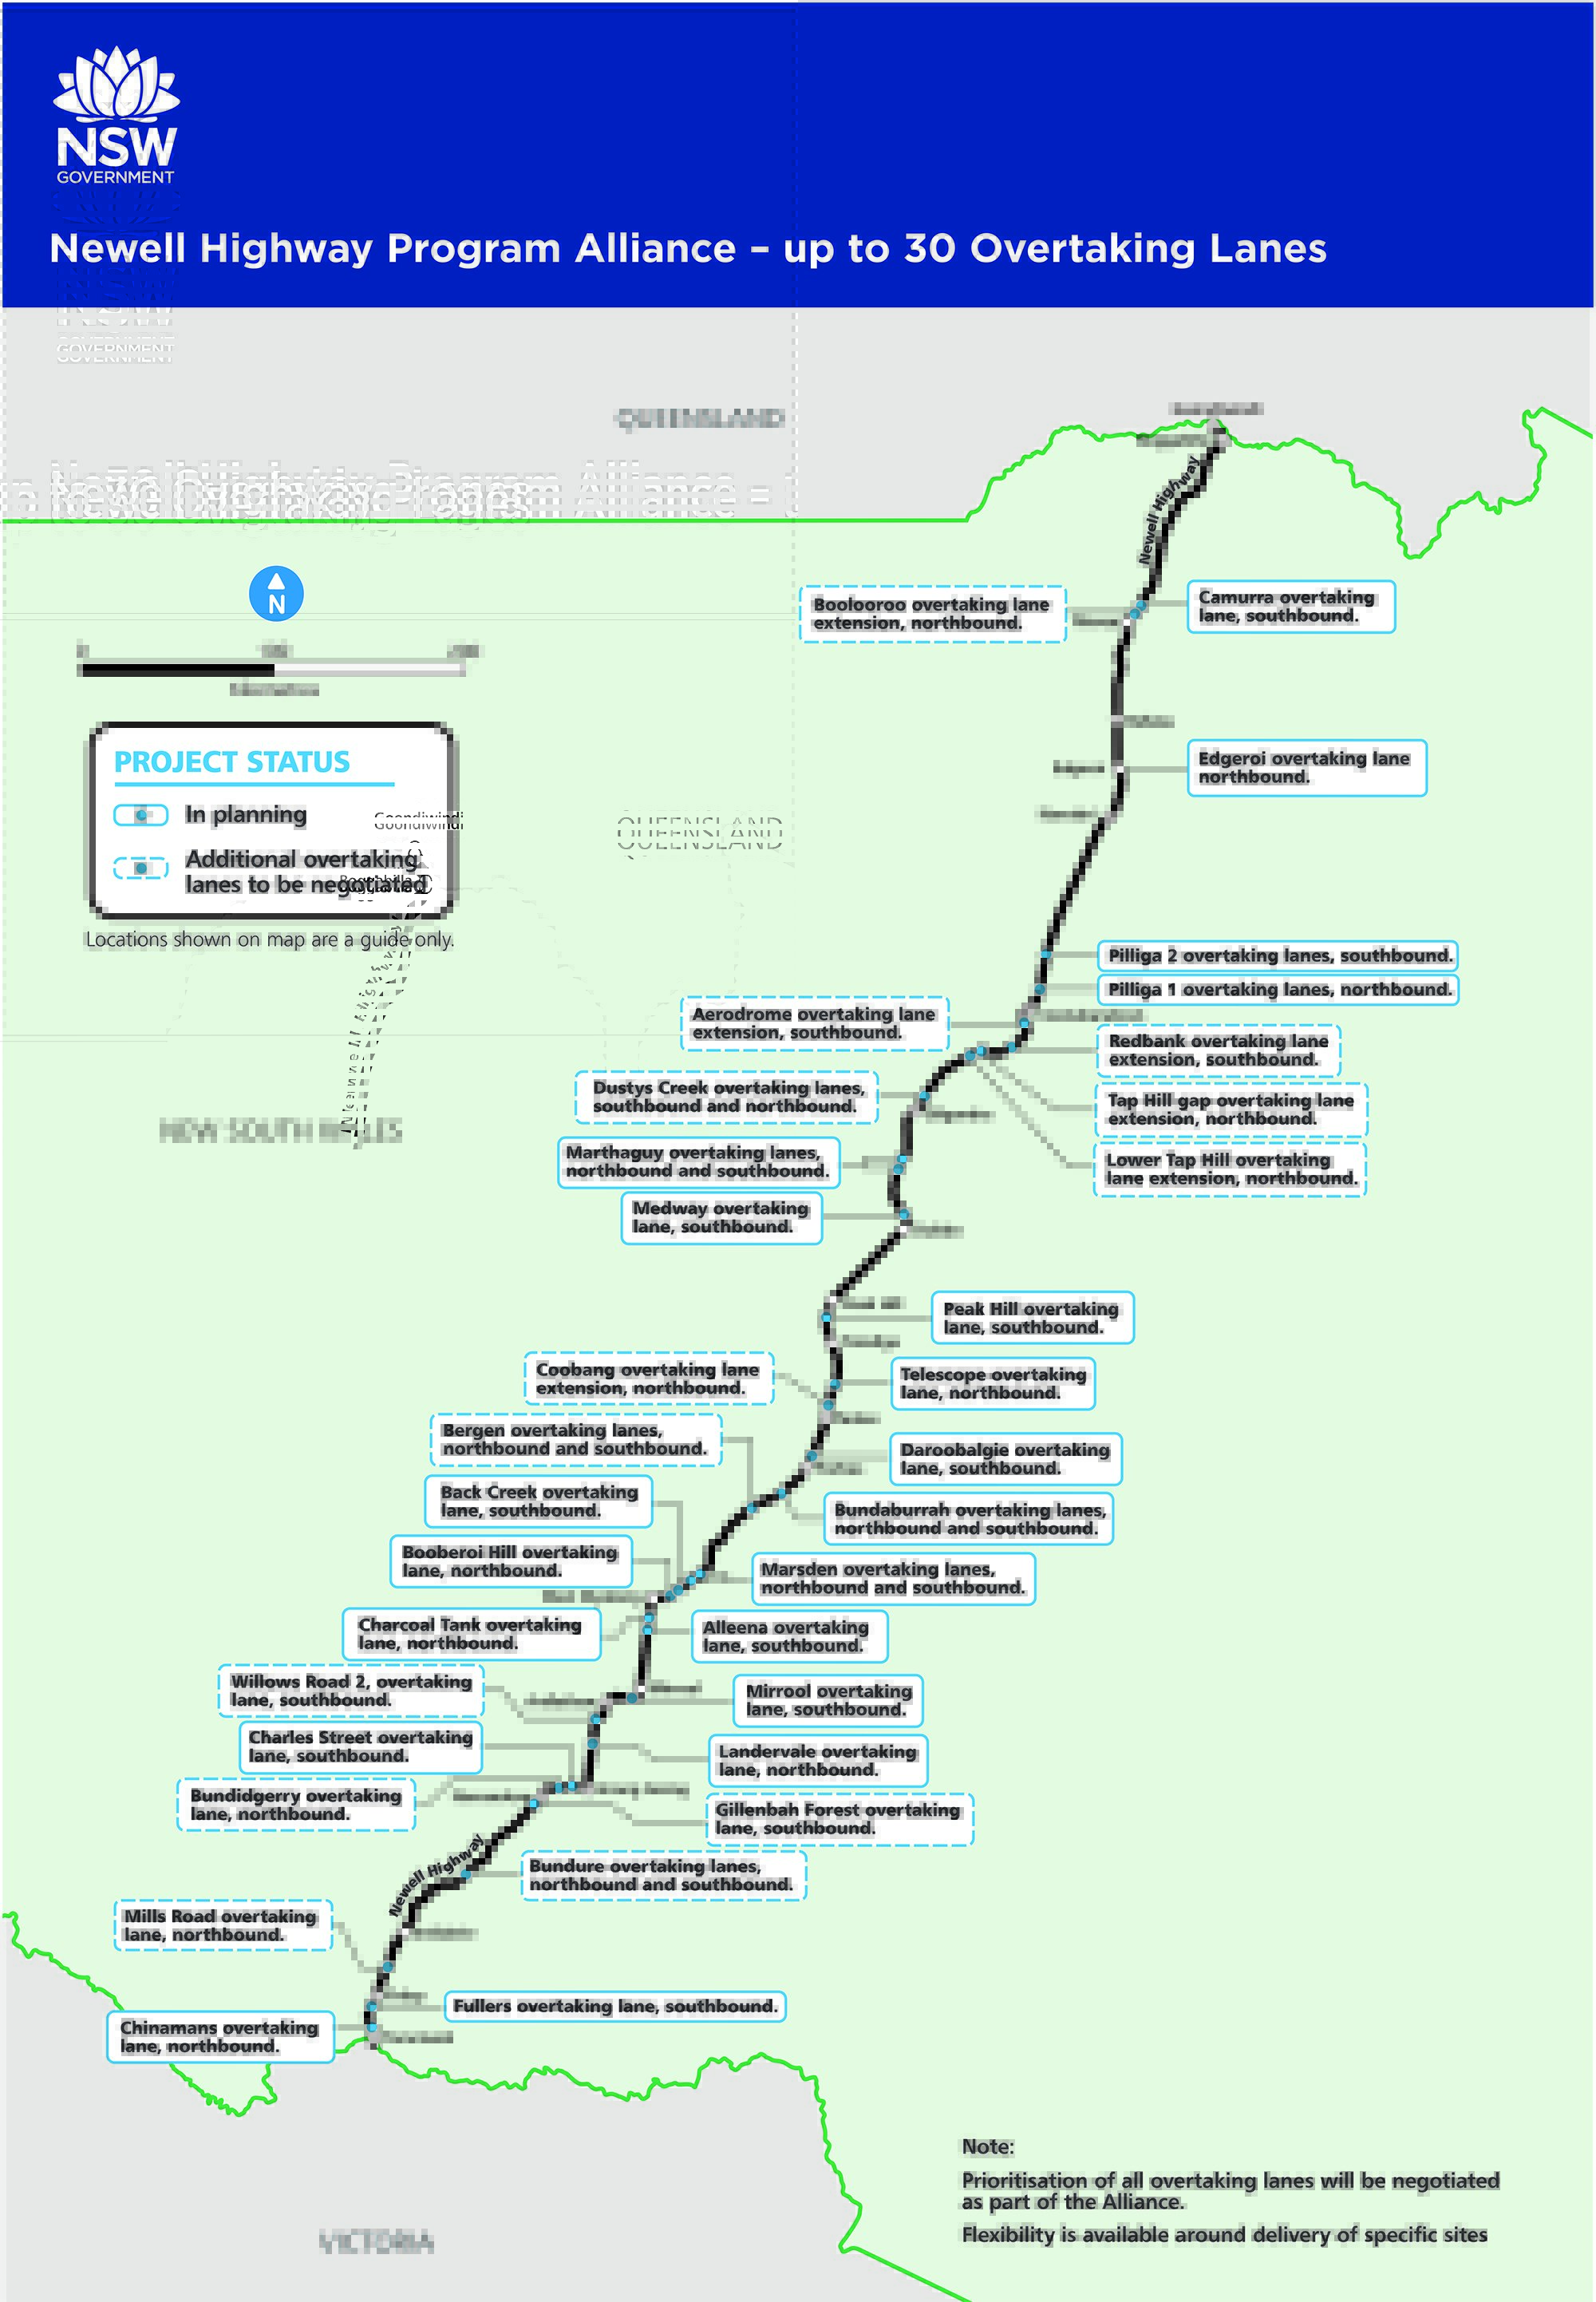 newell-highway-program-alliance-overtaking-lanes-map-201901